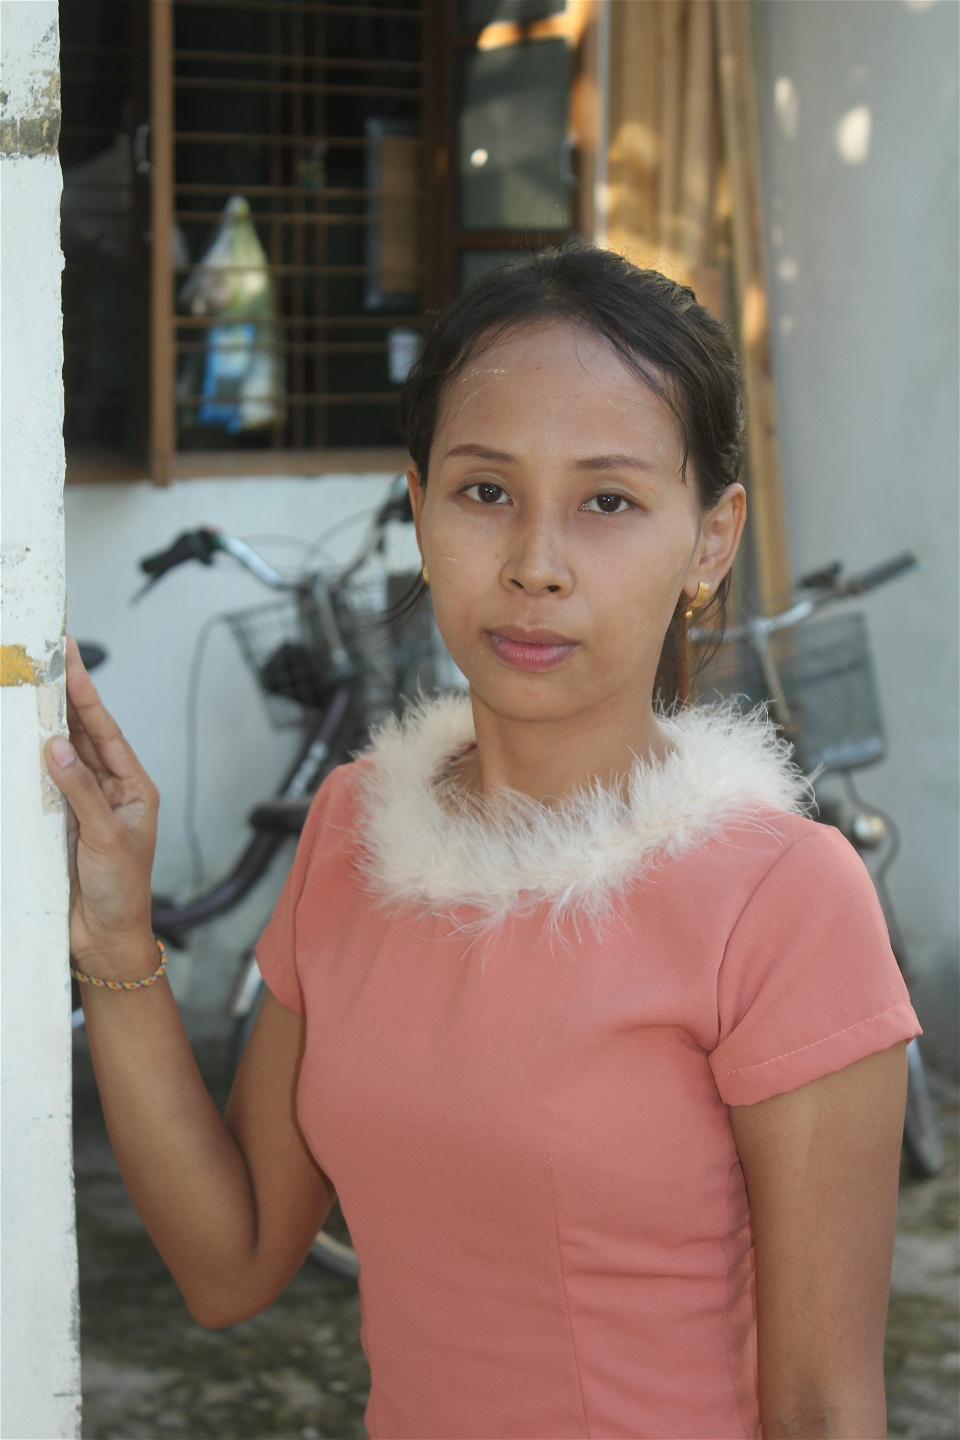 23-åriga Thel Thel Aung har jobbat på en textilfabrik i tre år. Hon är inte fackligt organiserad eftersom hon har fått information om att endast äldre arbetare med lång yrkeserfarenhet kan gå med. 